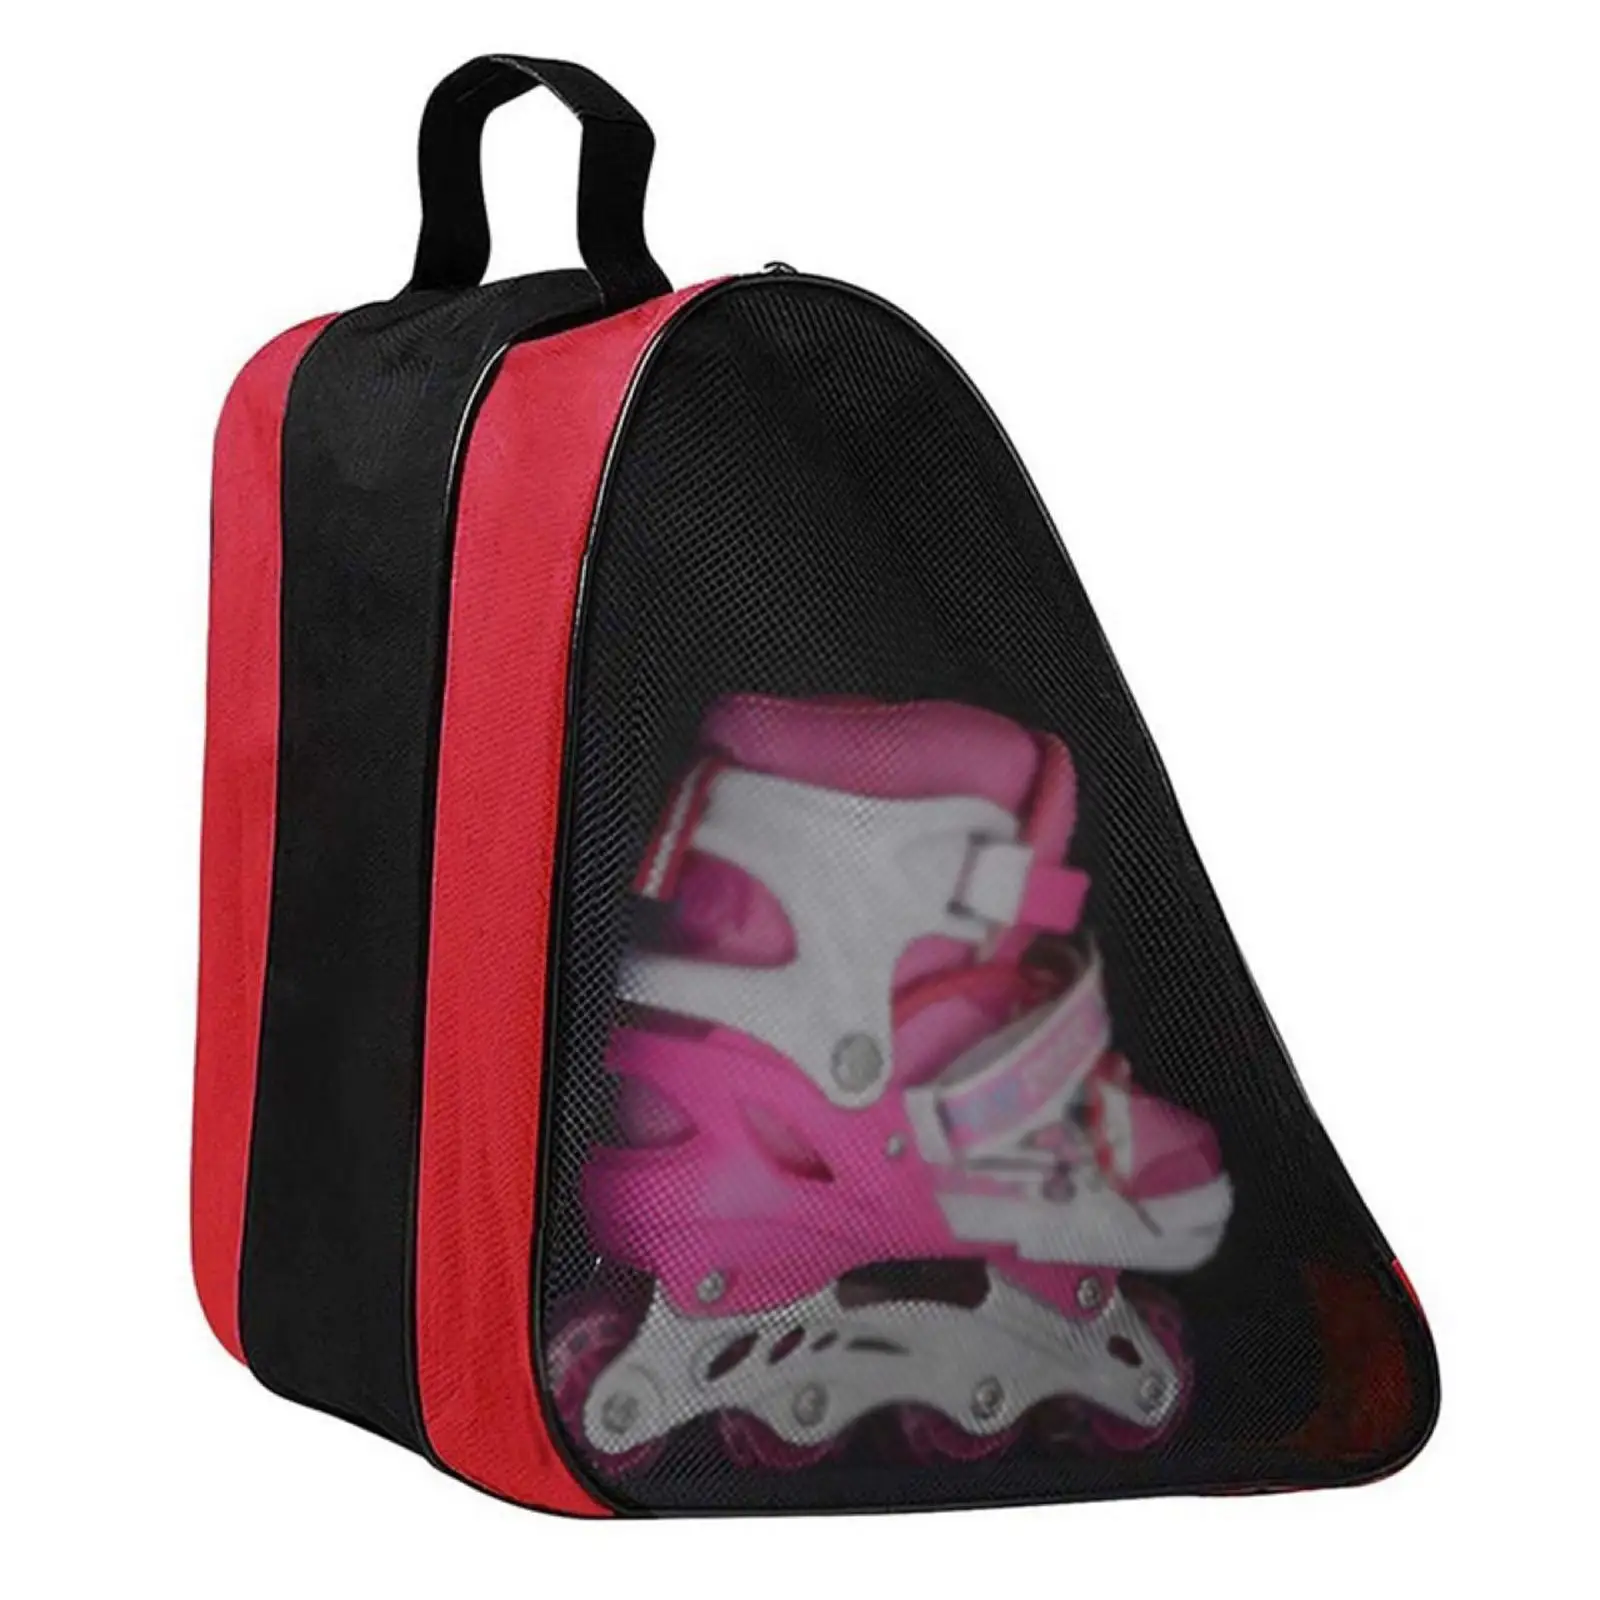 Triangle Skating Bag Shoulder Strap Adjustable Backpack Ice Skating Holder Accessories Oxford Cloth carry for Men Adult Kid